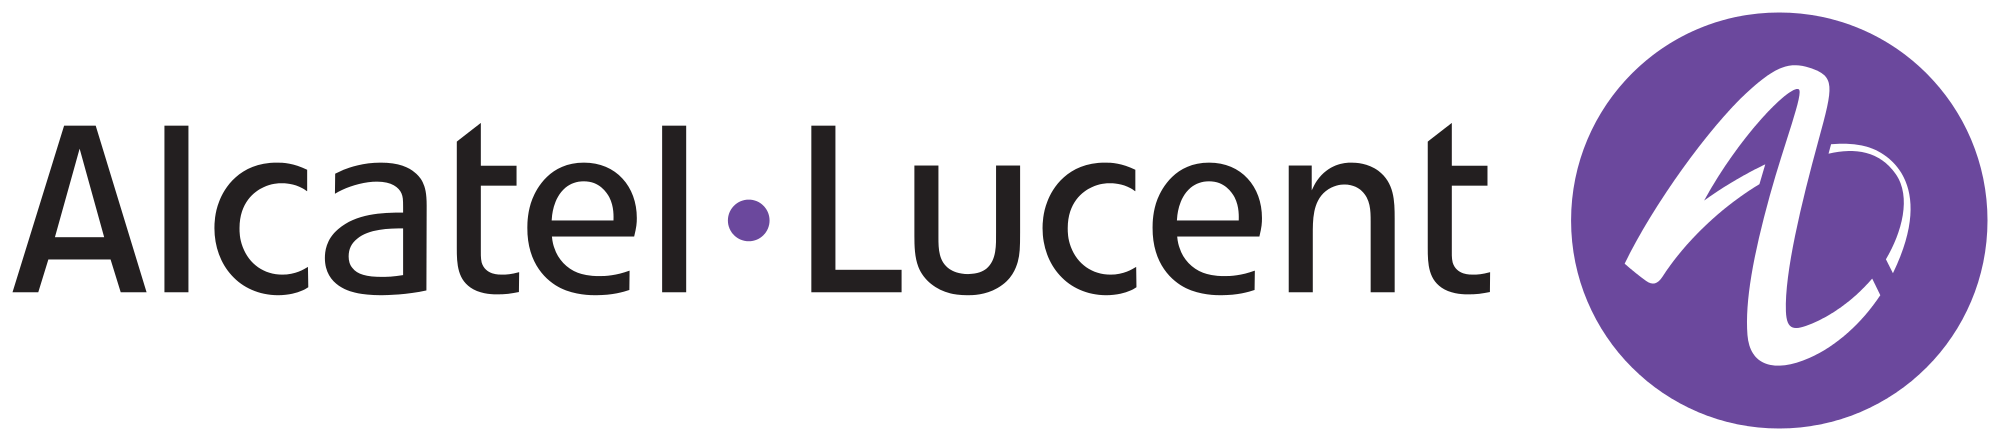 alcatel Logo